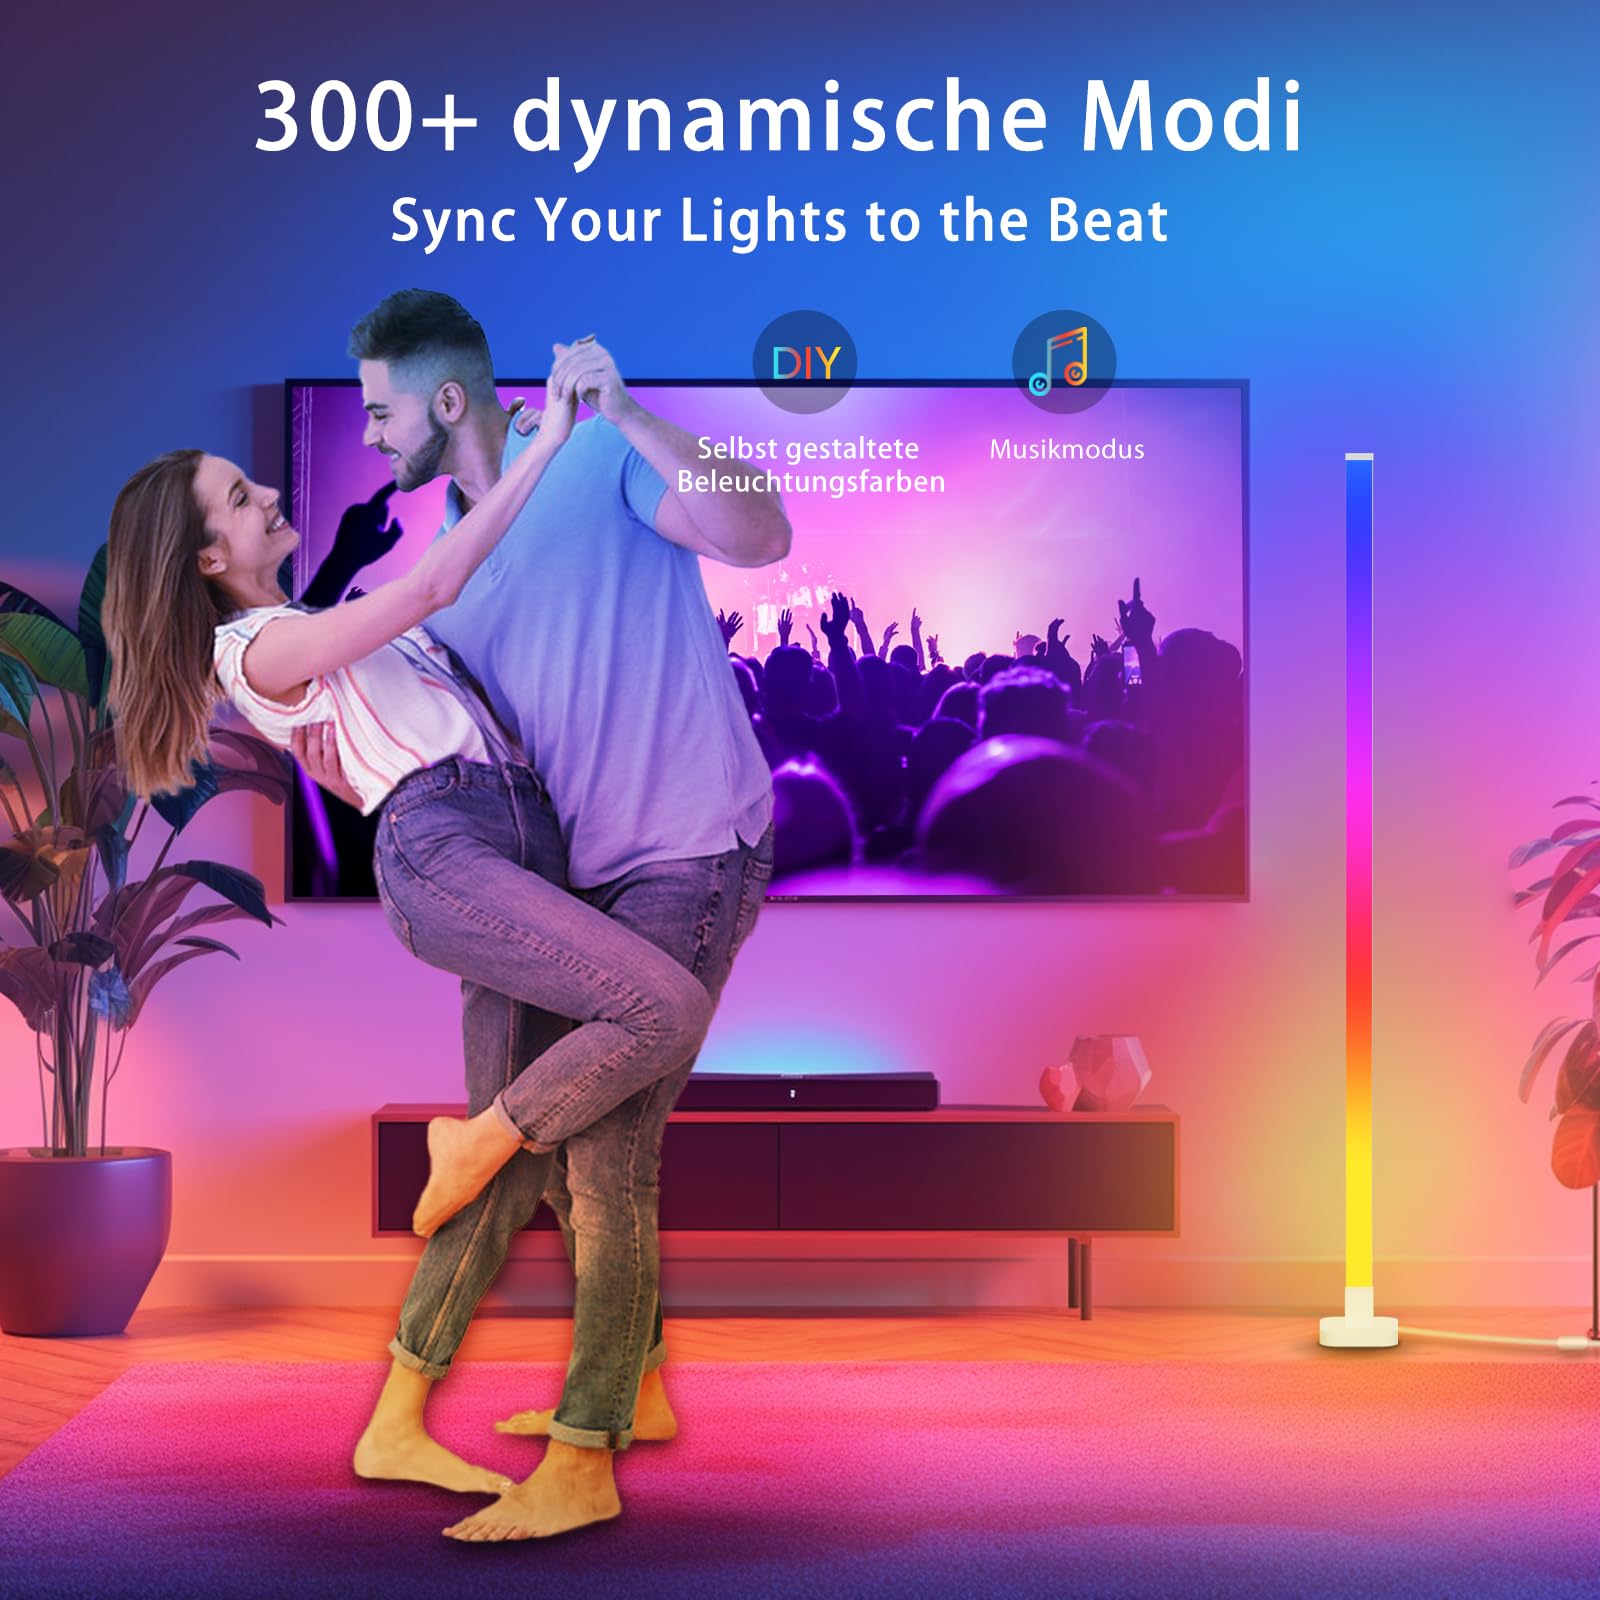 Paris Rhône LED Stehlampe DL006, intelligente RGB Eckenlampe mit App und Fernbedienung